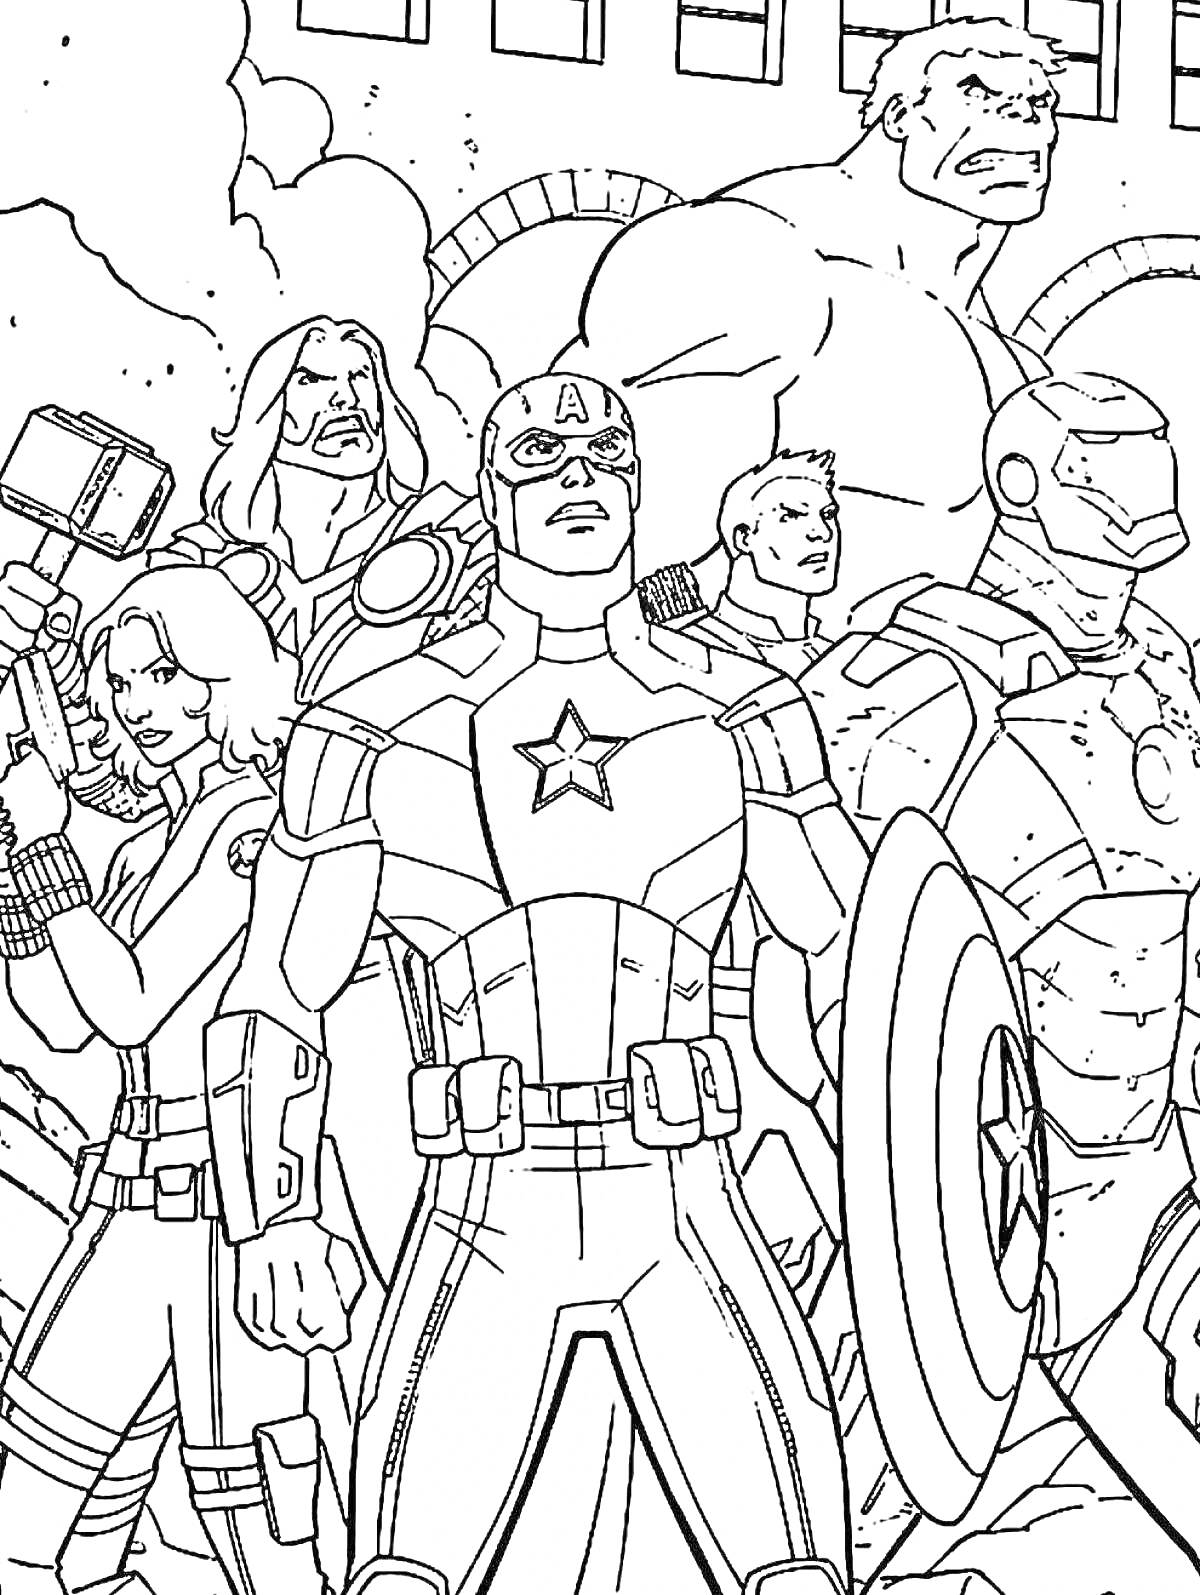 Мстители: Общий сбор! Главные персонажи - Капитан Америка, Тор, Железный Человек, Халк, Черная Вдова, Соколиный Глаз